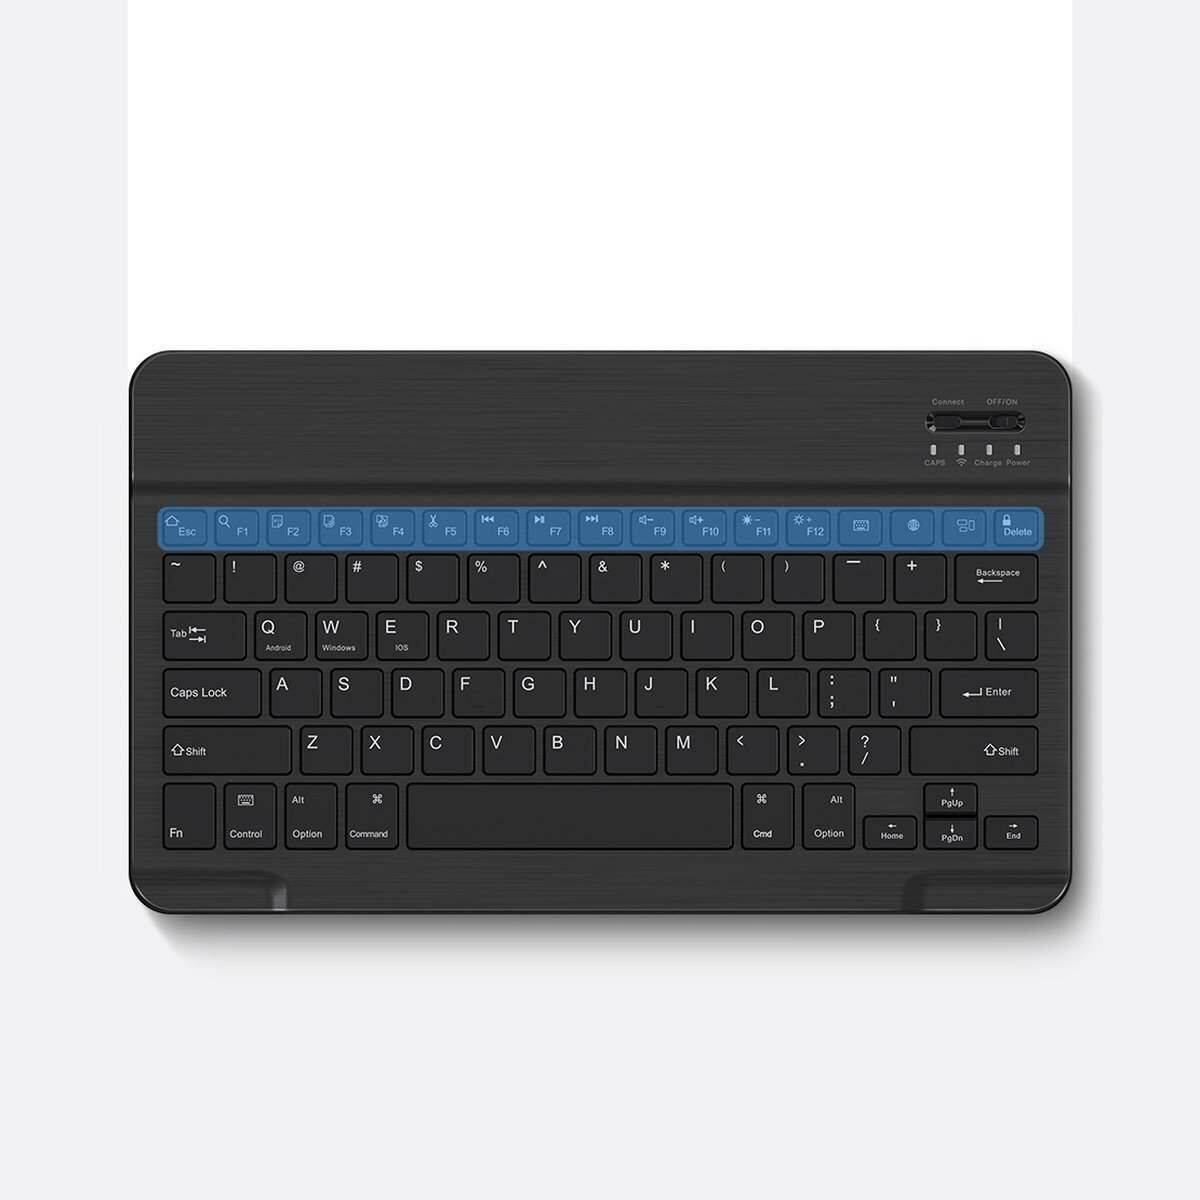 Kép 12/18 - Baseus iPad Pro 11 tok, Brilliance, billentyűzettel (Qwerty), fekete (ARJK000013)